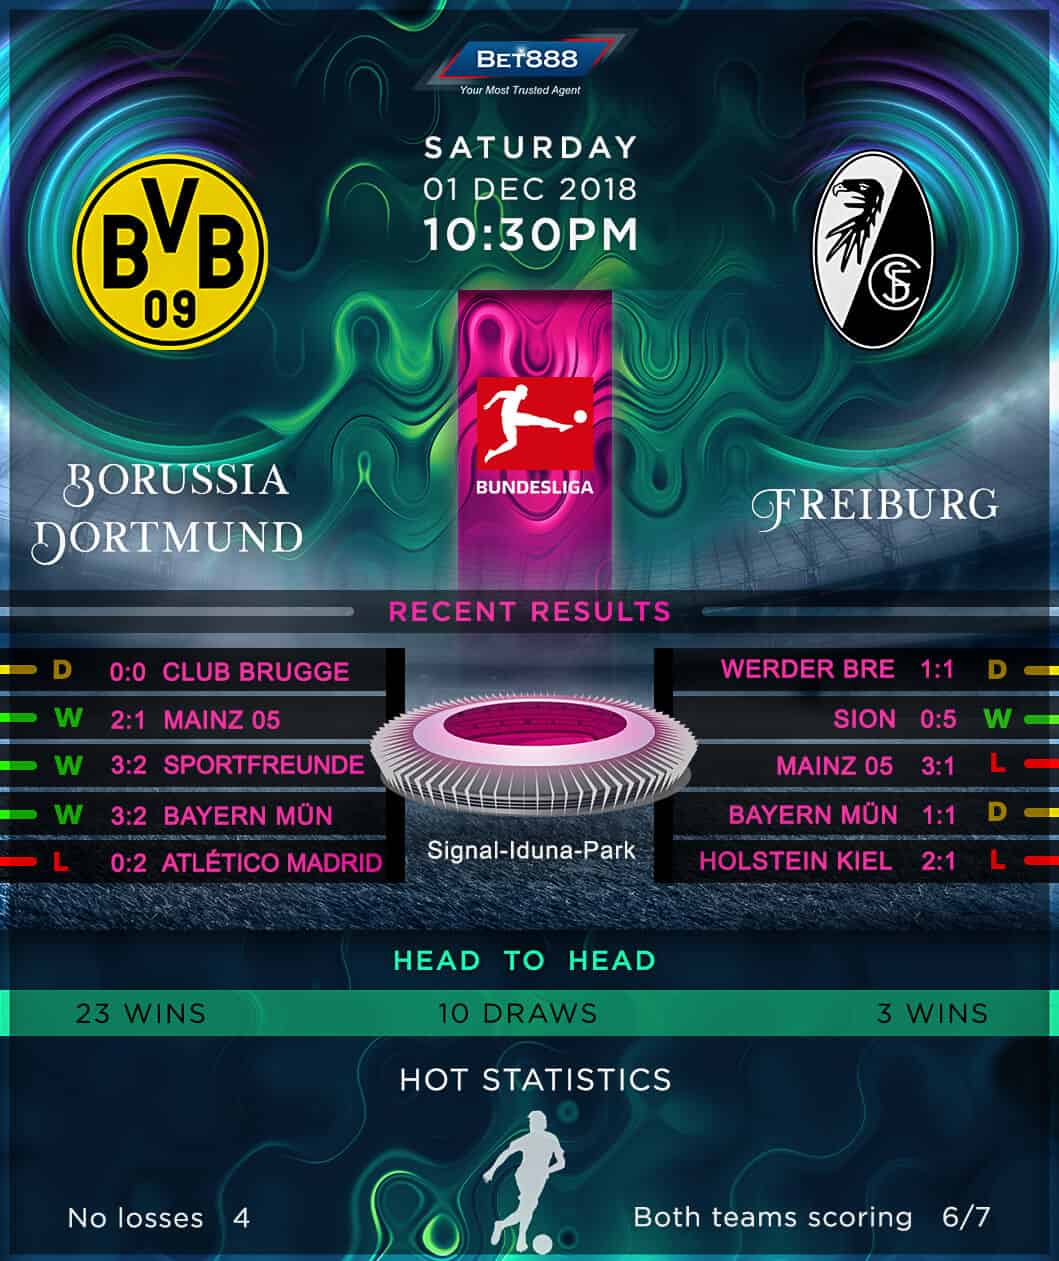 Borussia Dortmund vs Freiburg 01/12/18